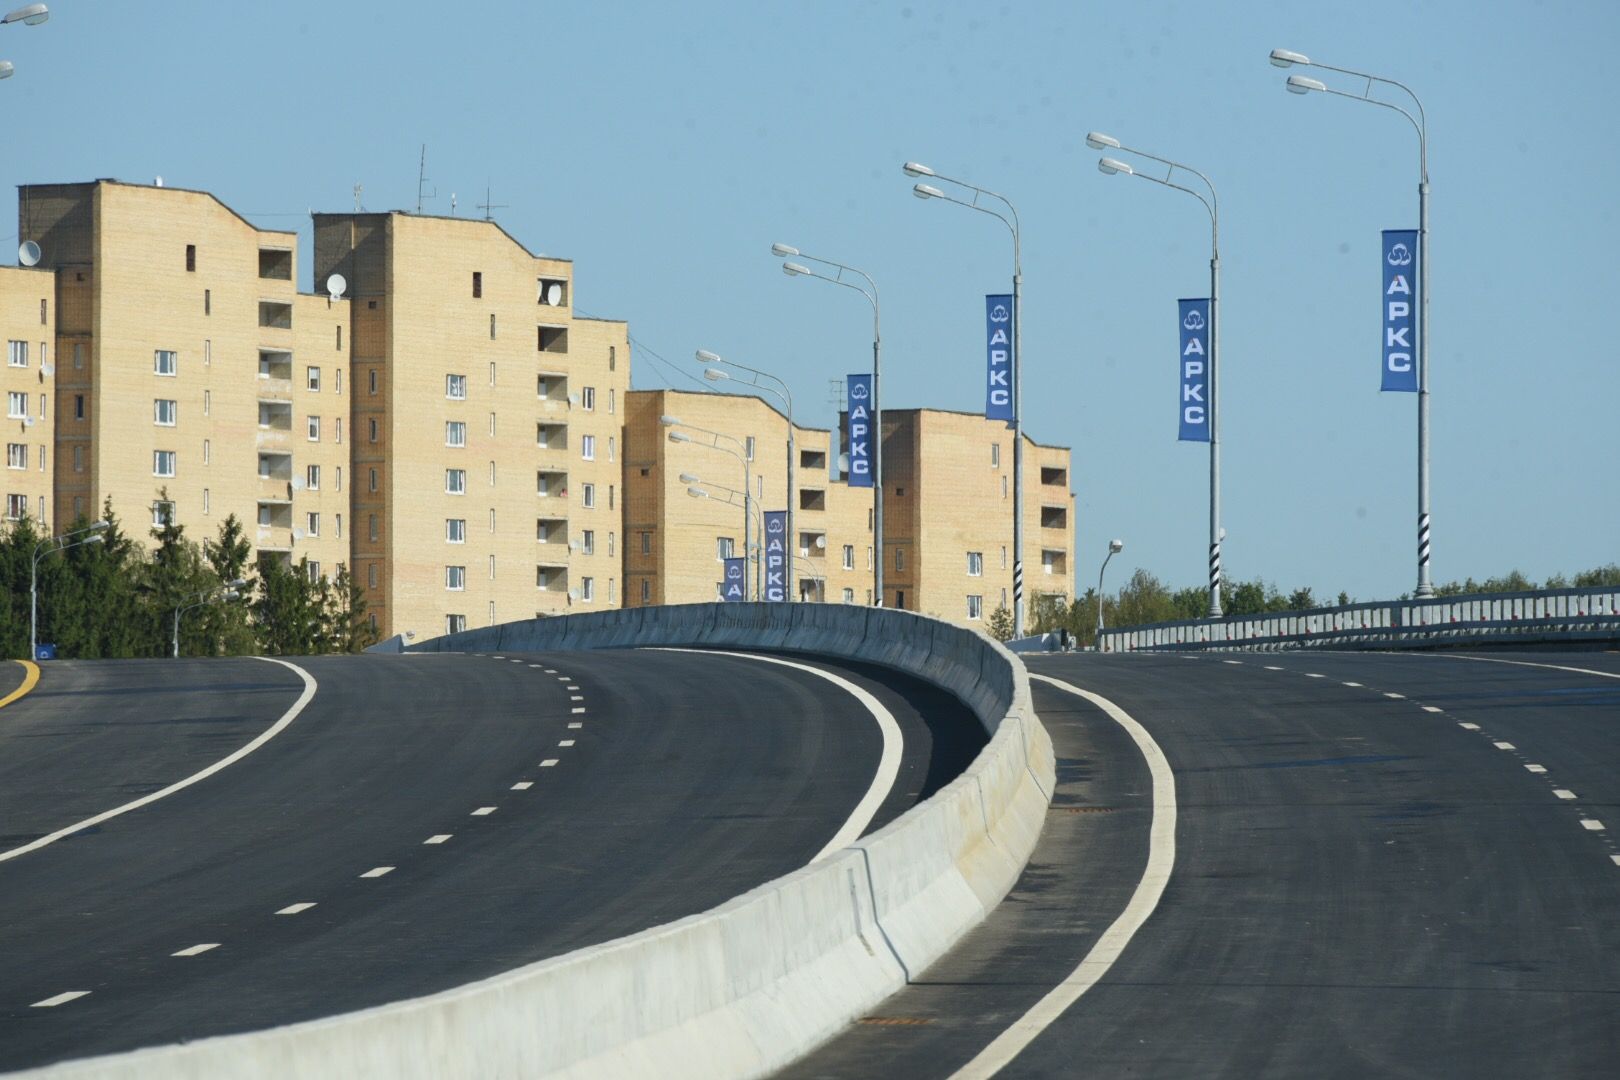 Съезд с Калужского шоссе улучшит транспортную доступность территорий Новой Москвы